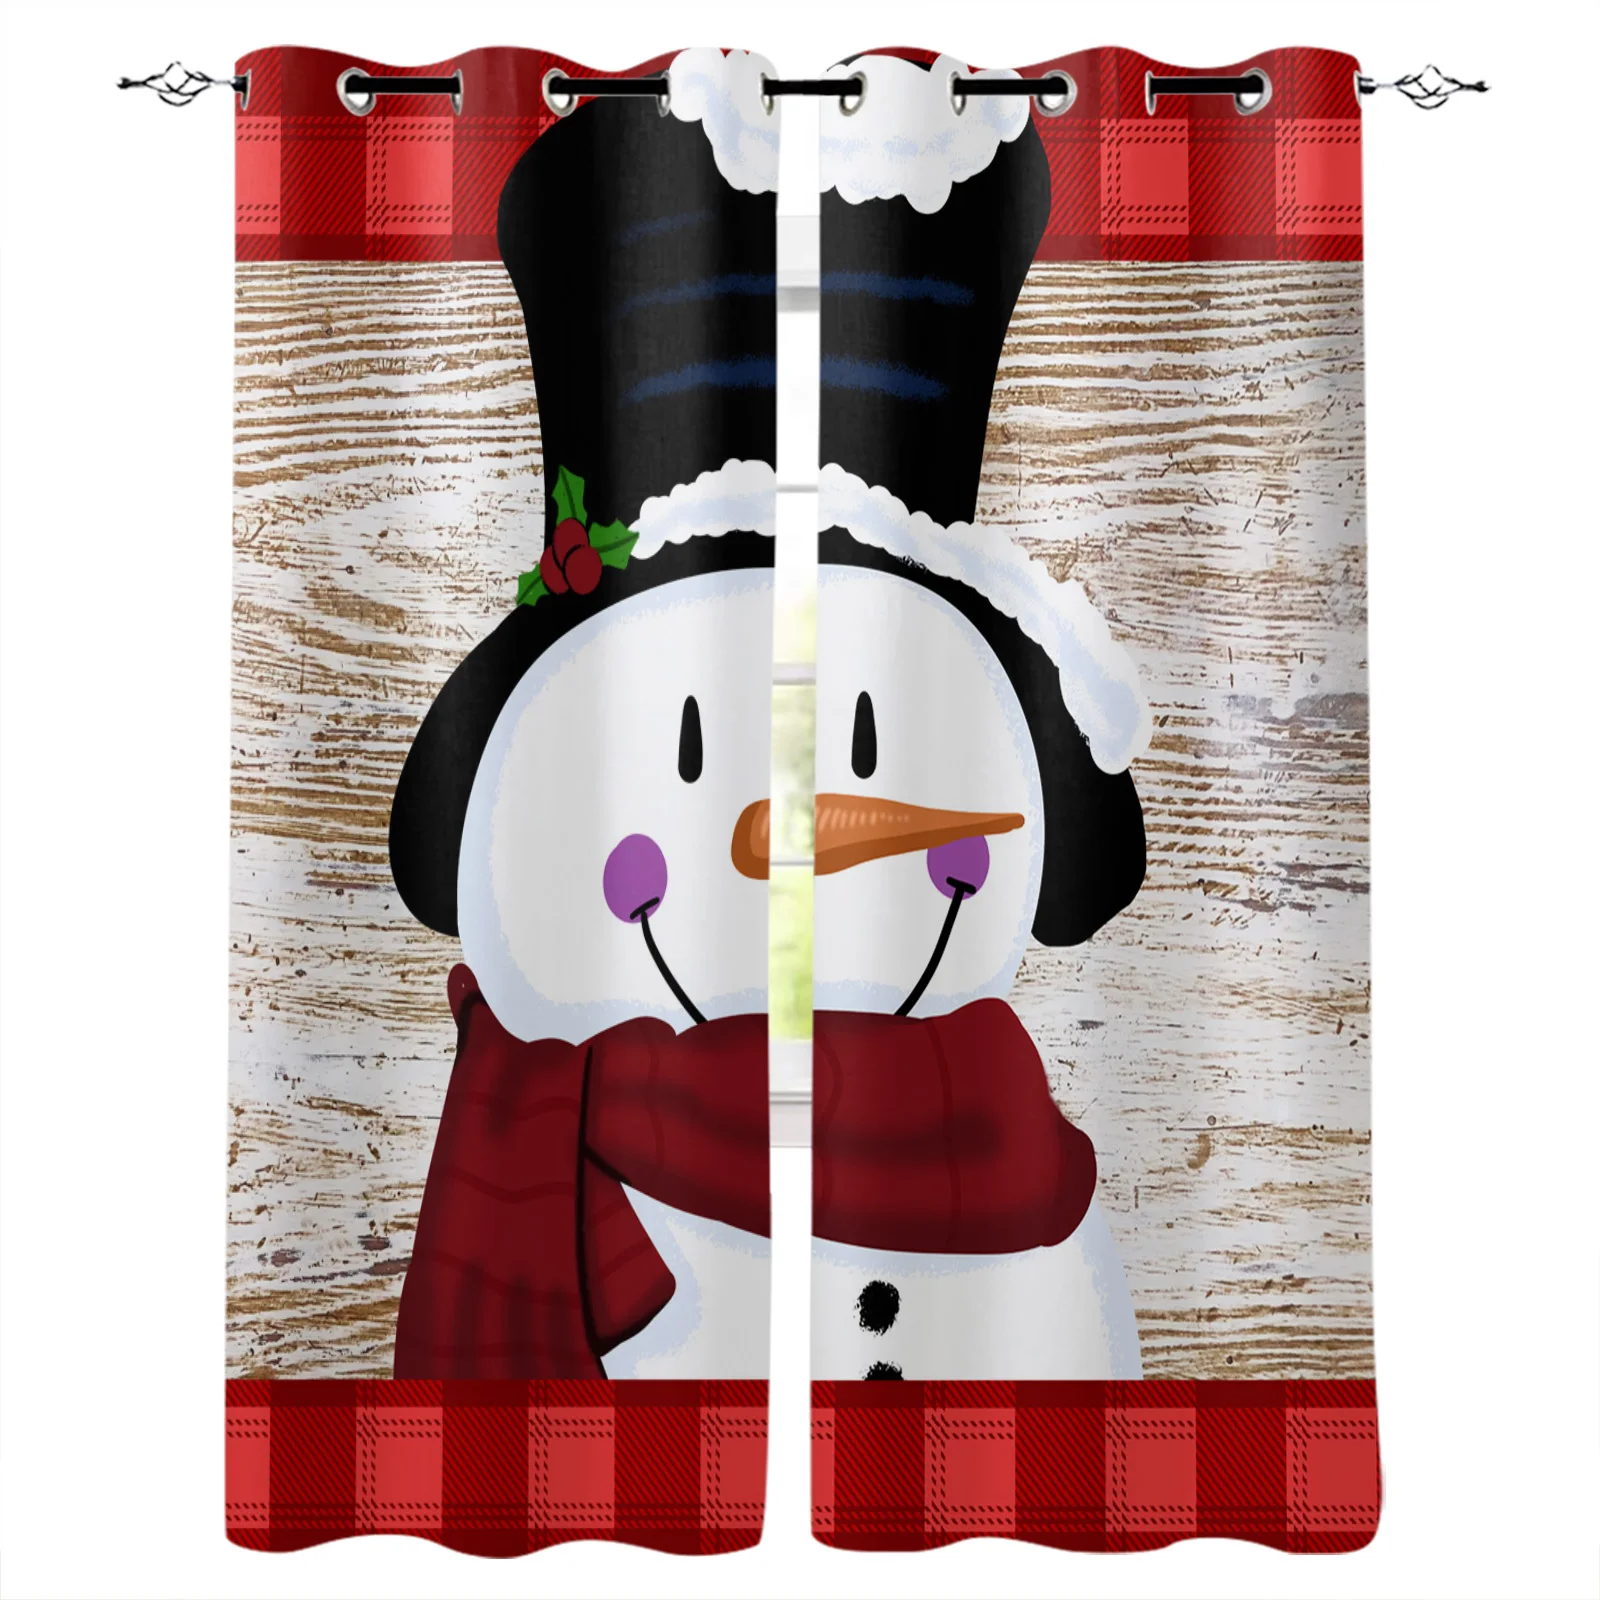 "Занавески Snowman Christmas Lattice с имитацией деревянной текстуры для гостиной, детской комнаты, декоративного оформления окон, штор на кухню"